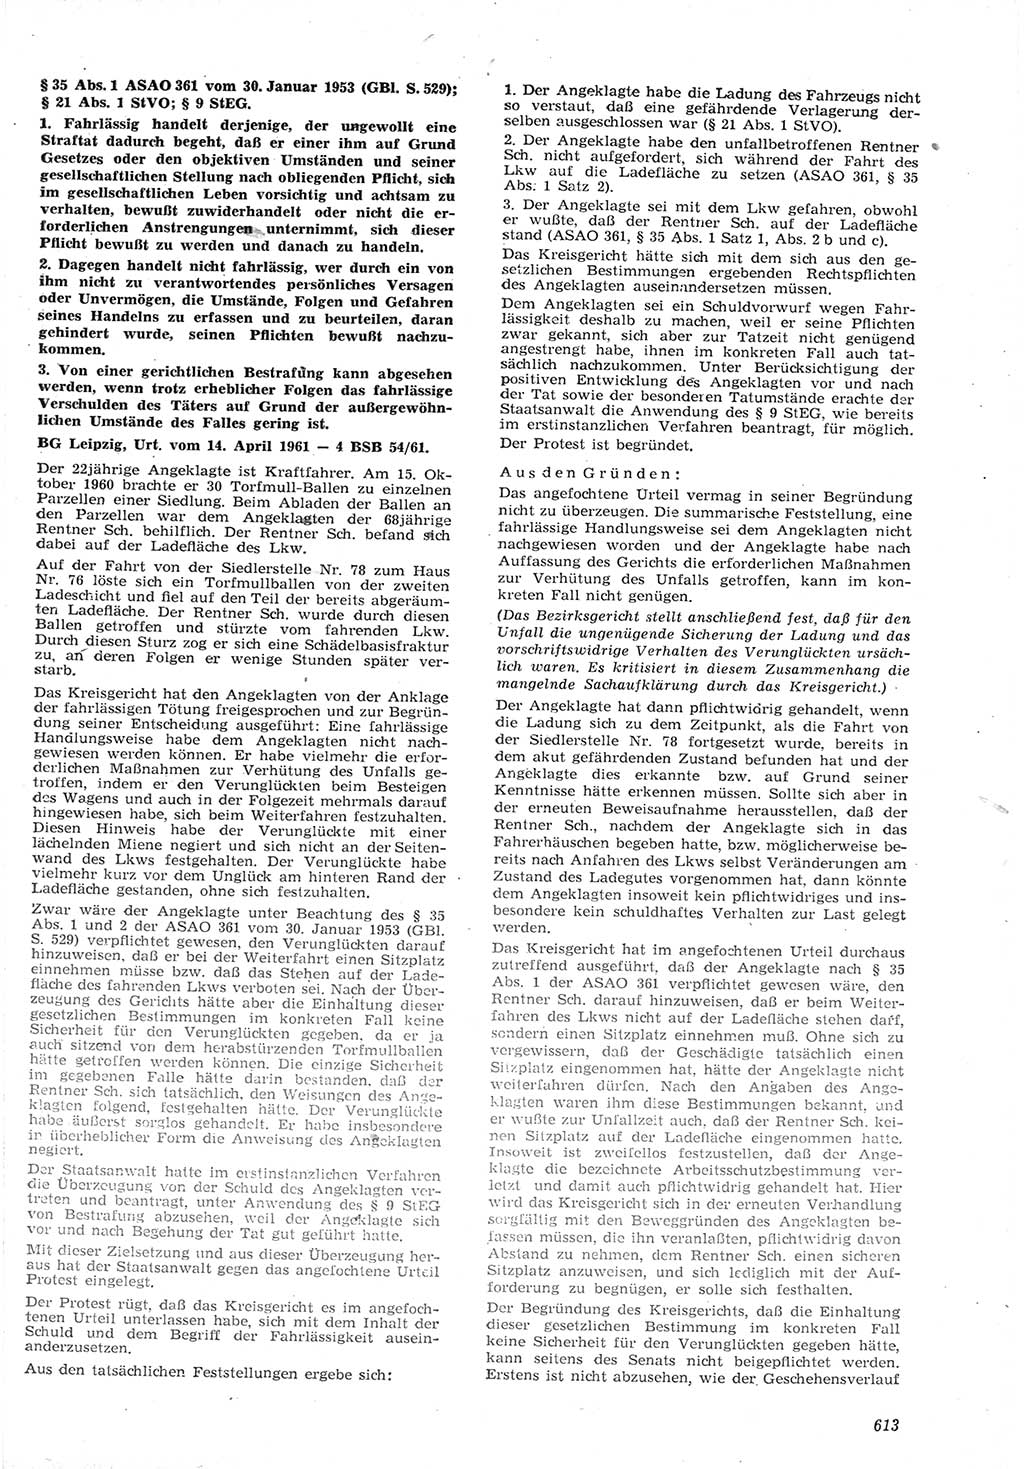 Neue Justiz (NJ), Zeitschrift für Recht und Rechtswissenschaft [Deutsche Demokratische Republik (DDR)], 15. Jahrgang 1961, Seite 613 (NJ DDR 1961, S. 613)